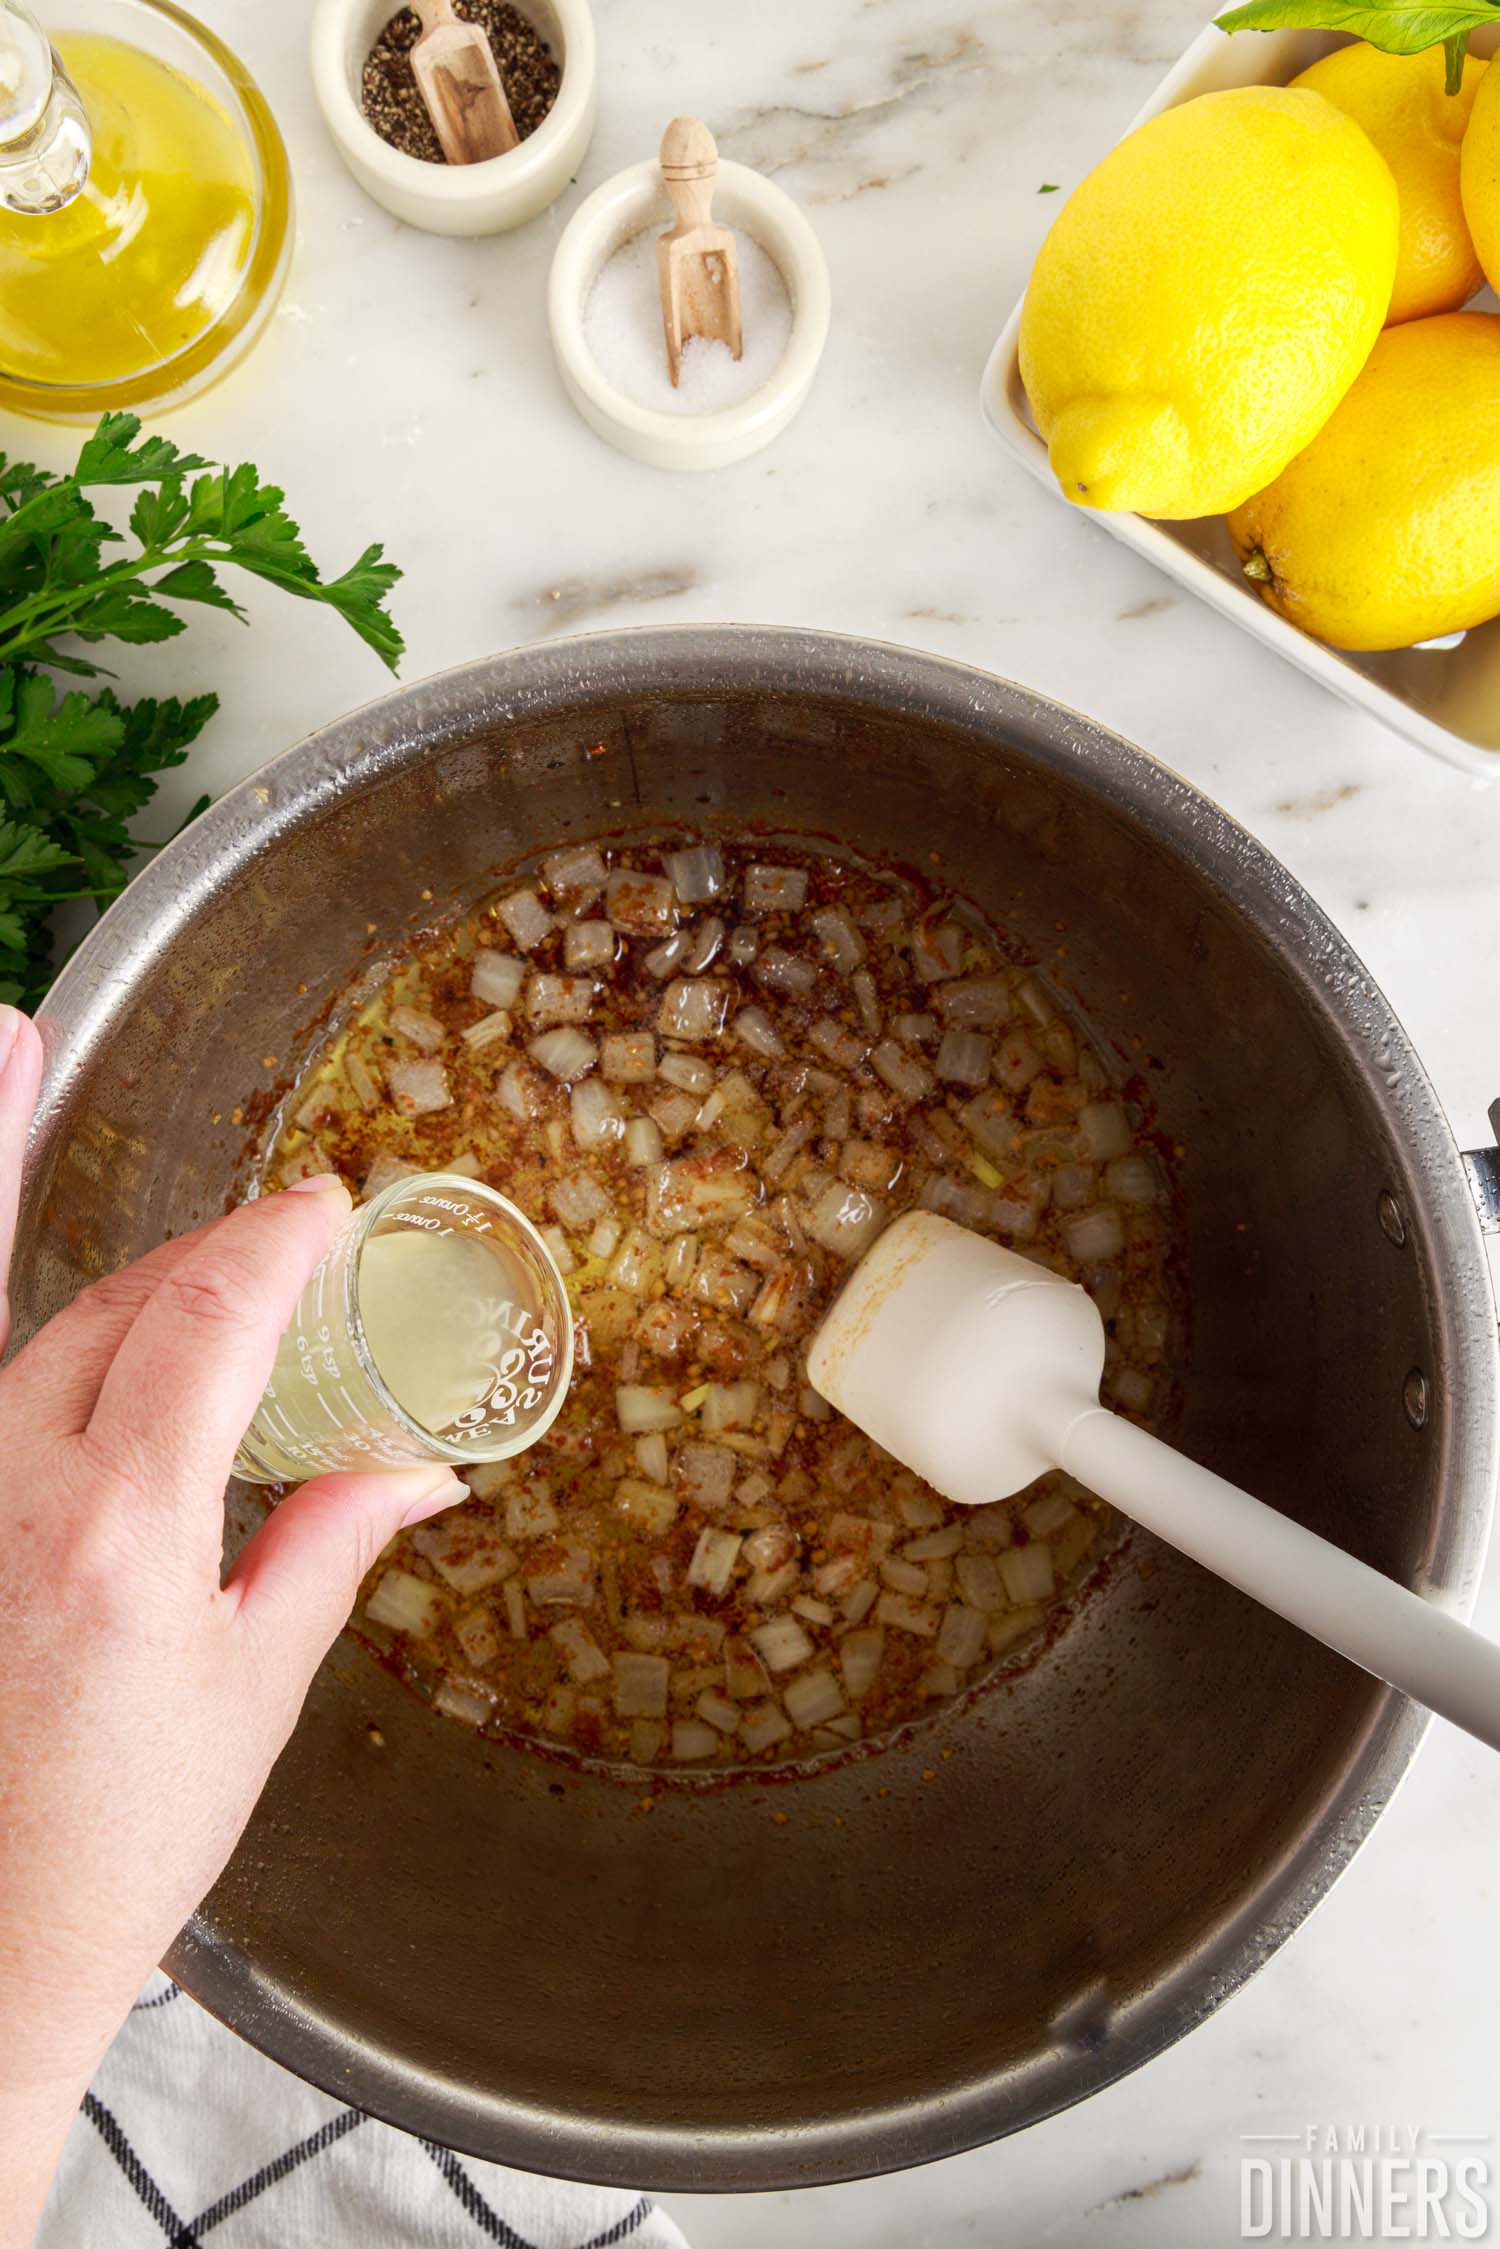 Adding lemon juice to sautéd onions in Instant Pot.